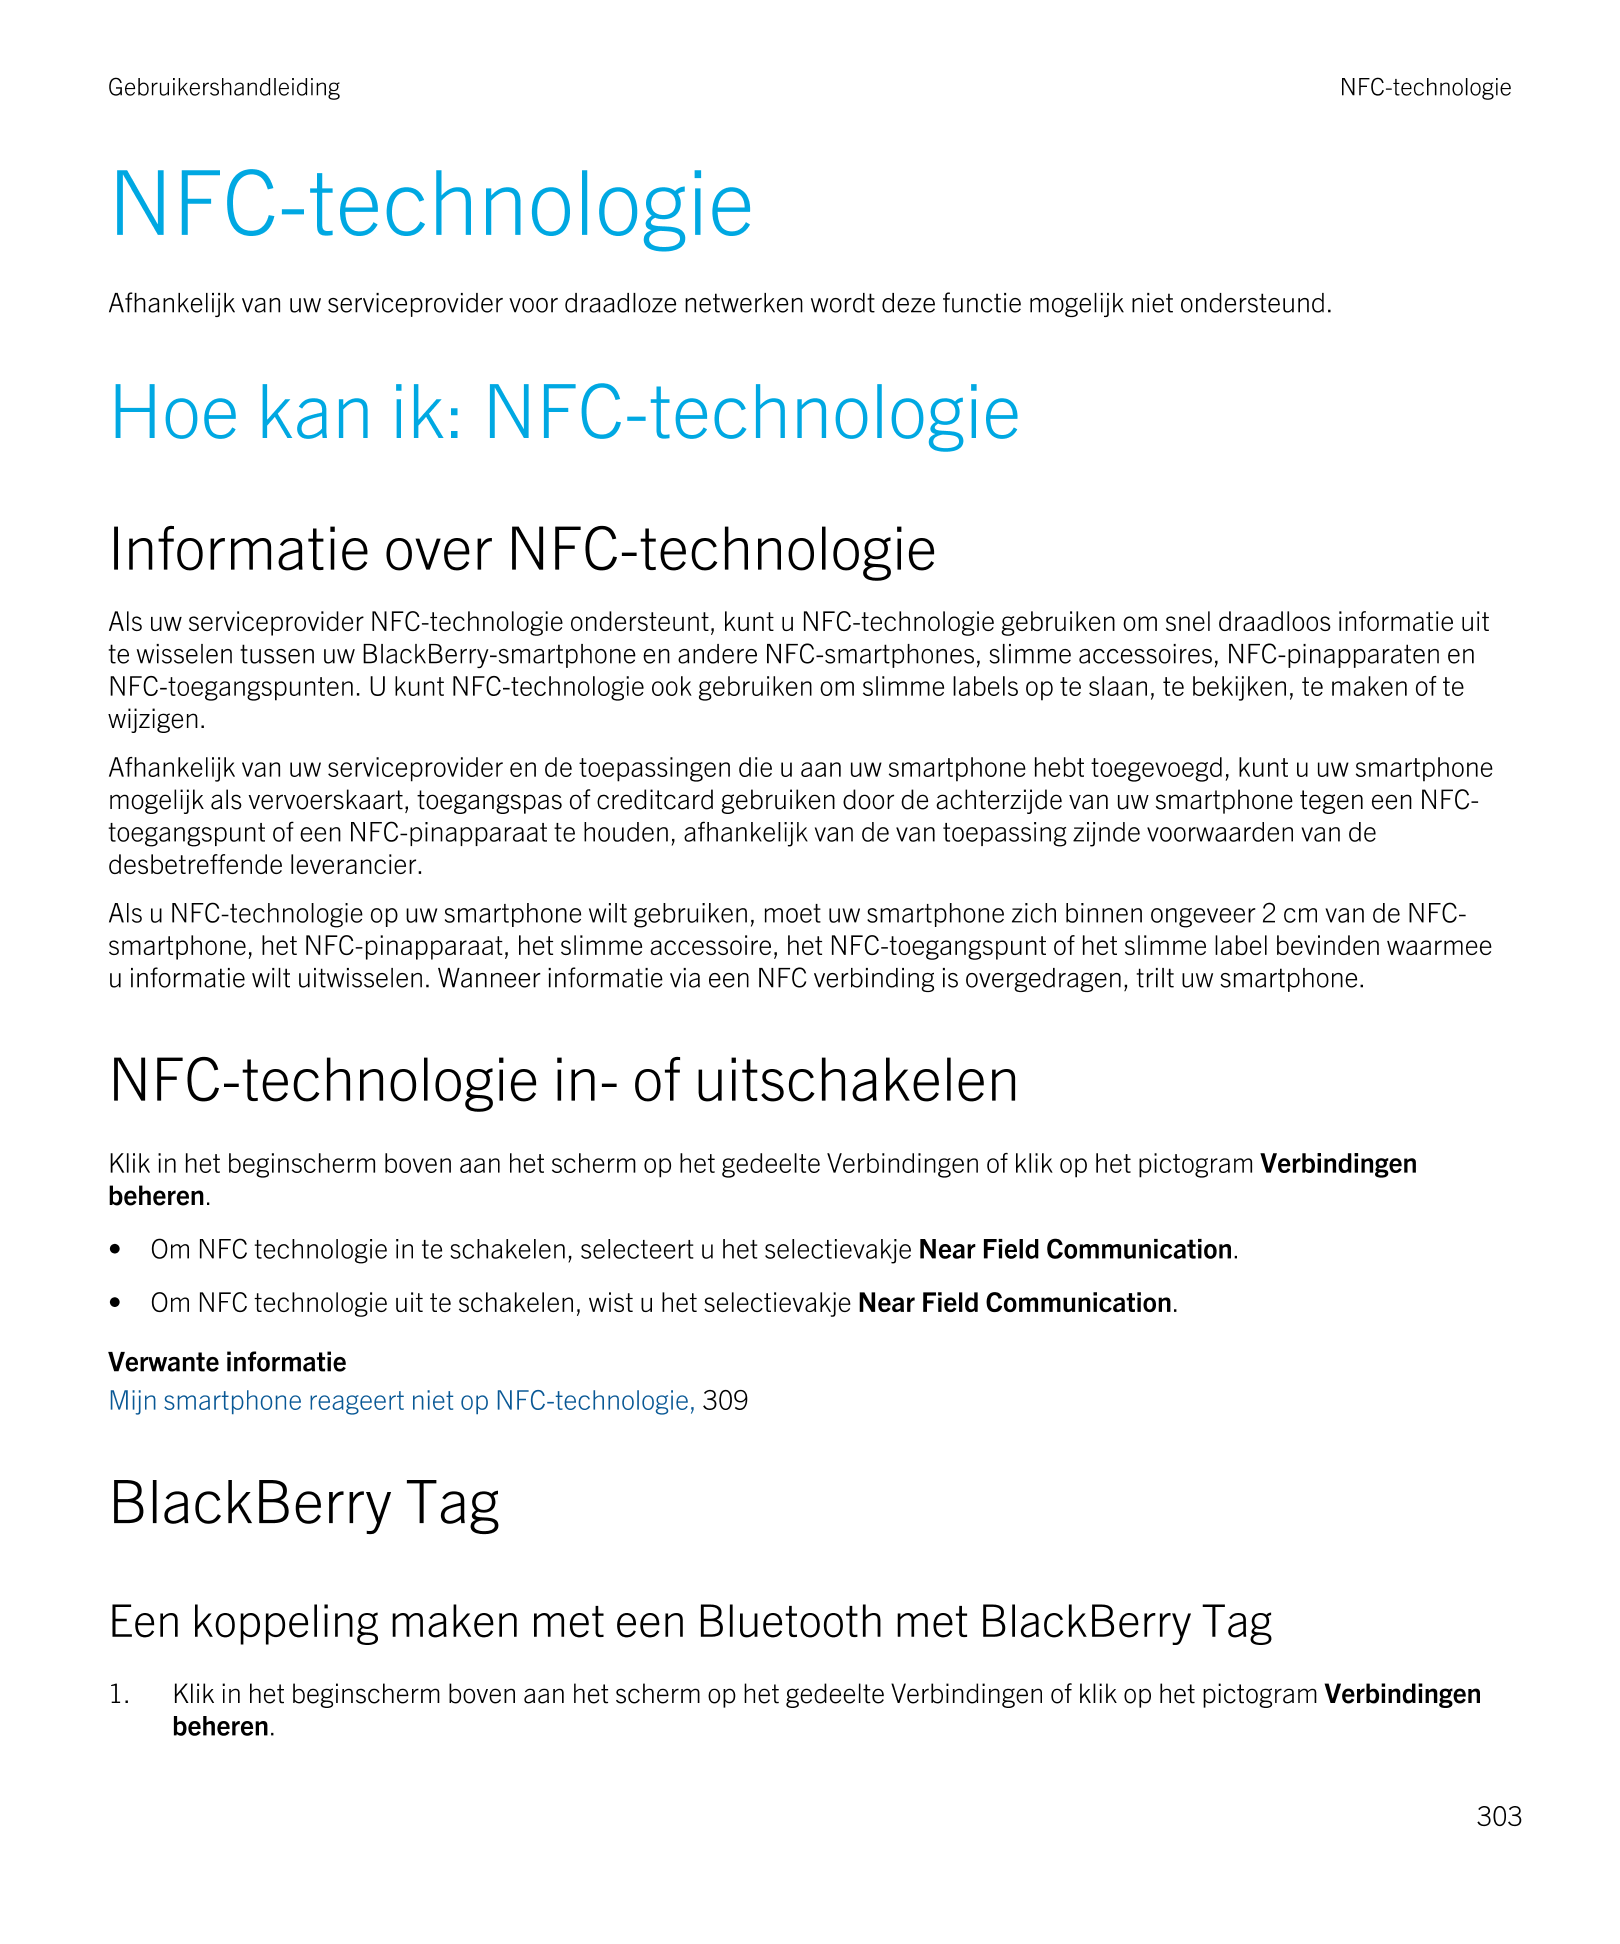 Gebruikershandleiding NFC-technologie
NFC-technologie
Afhankelijk van uw serviceprovider voor draadloze netwerken wordt deze fun